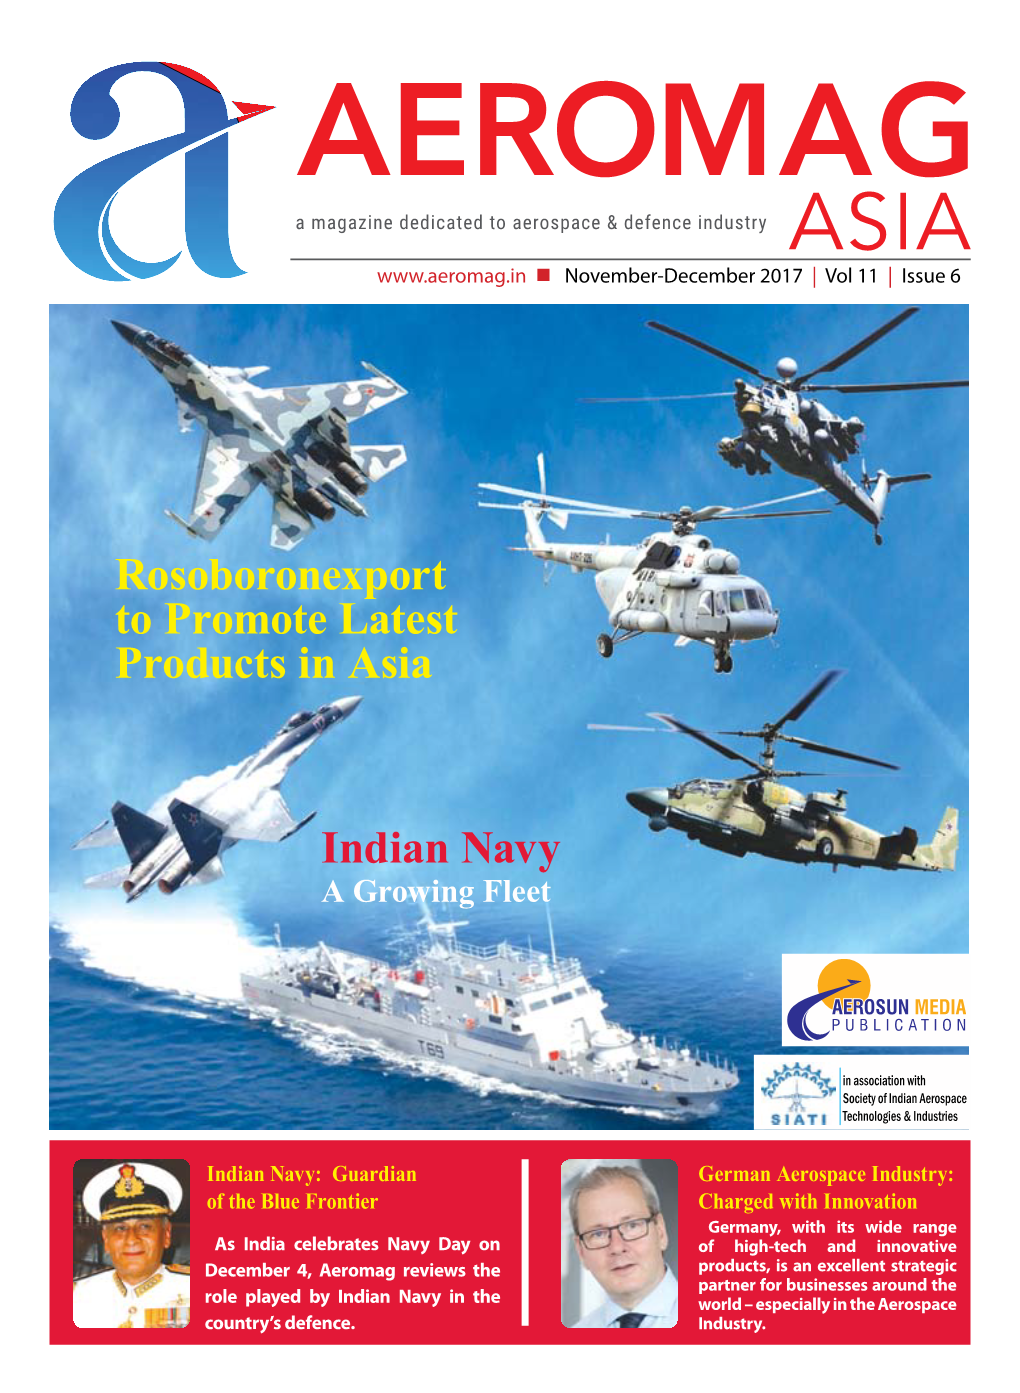 Indian Navy a Growing Fleet